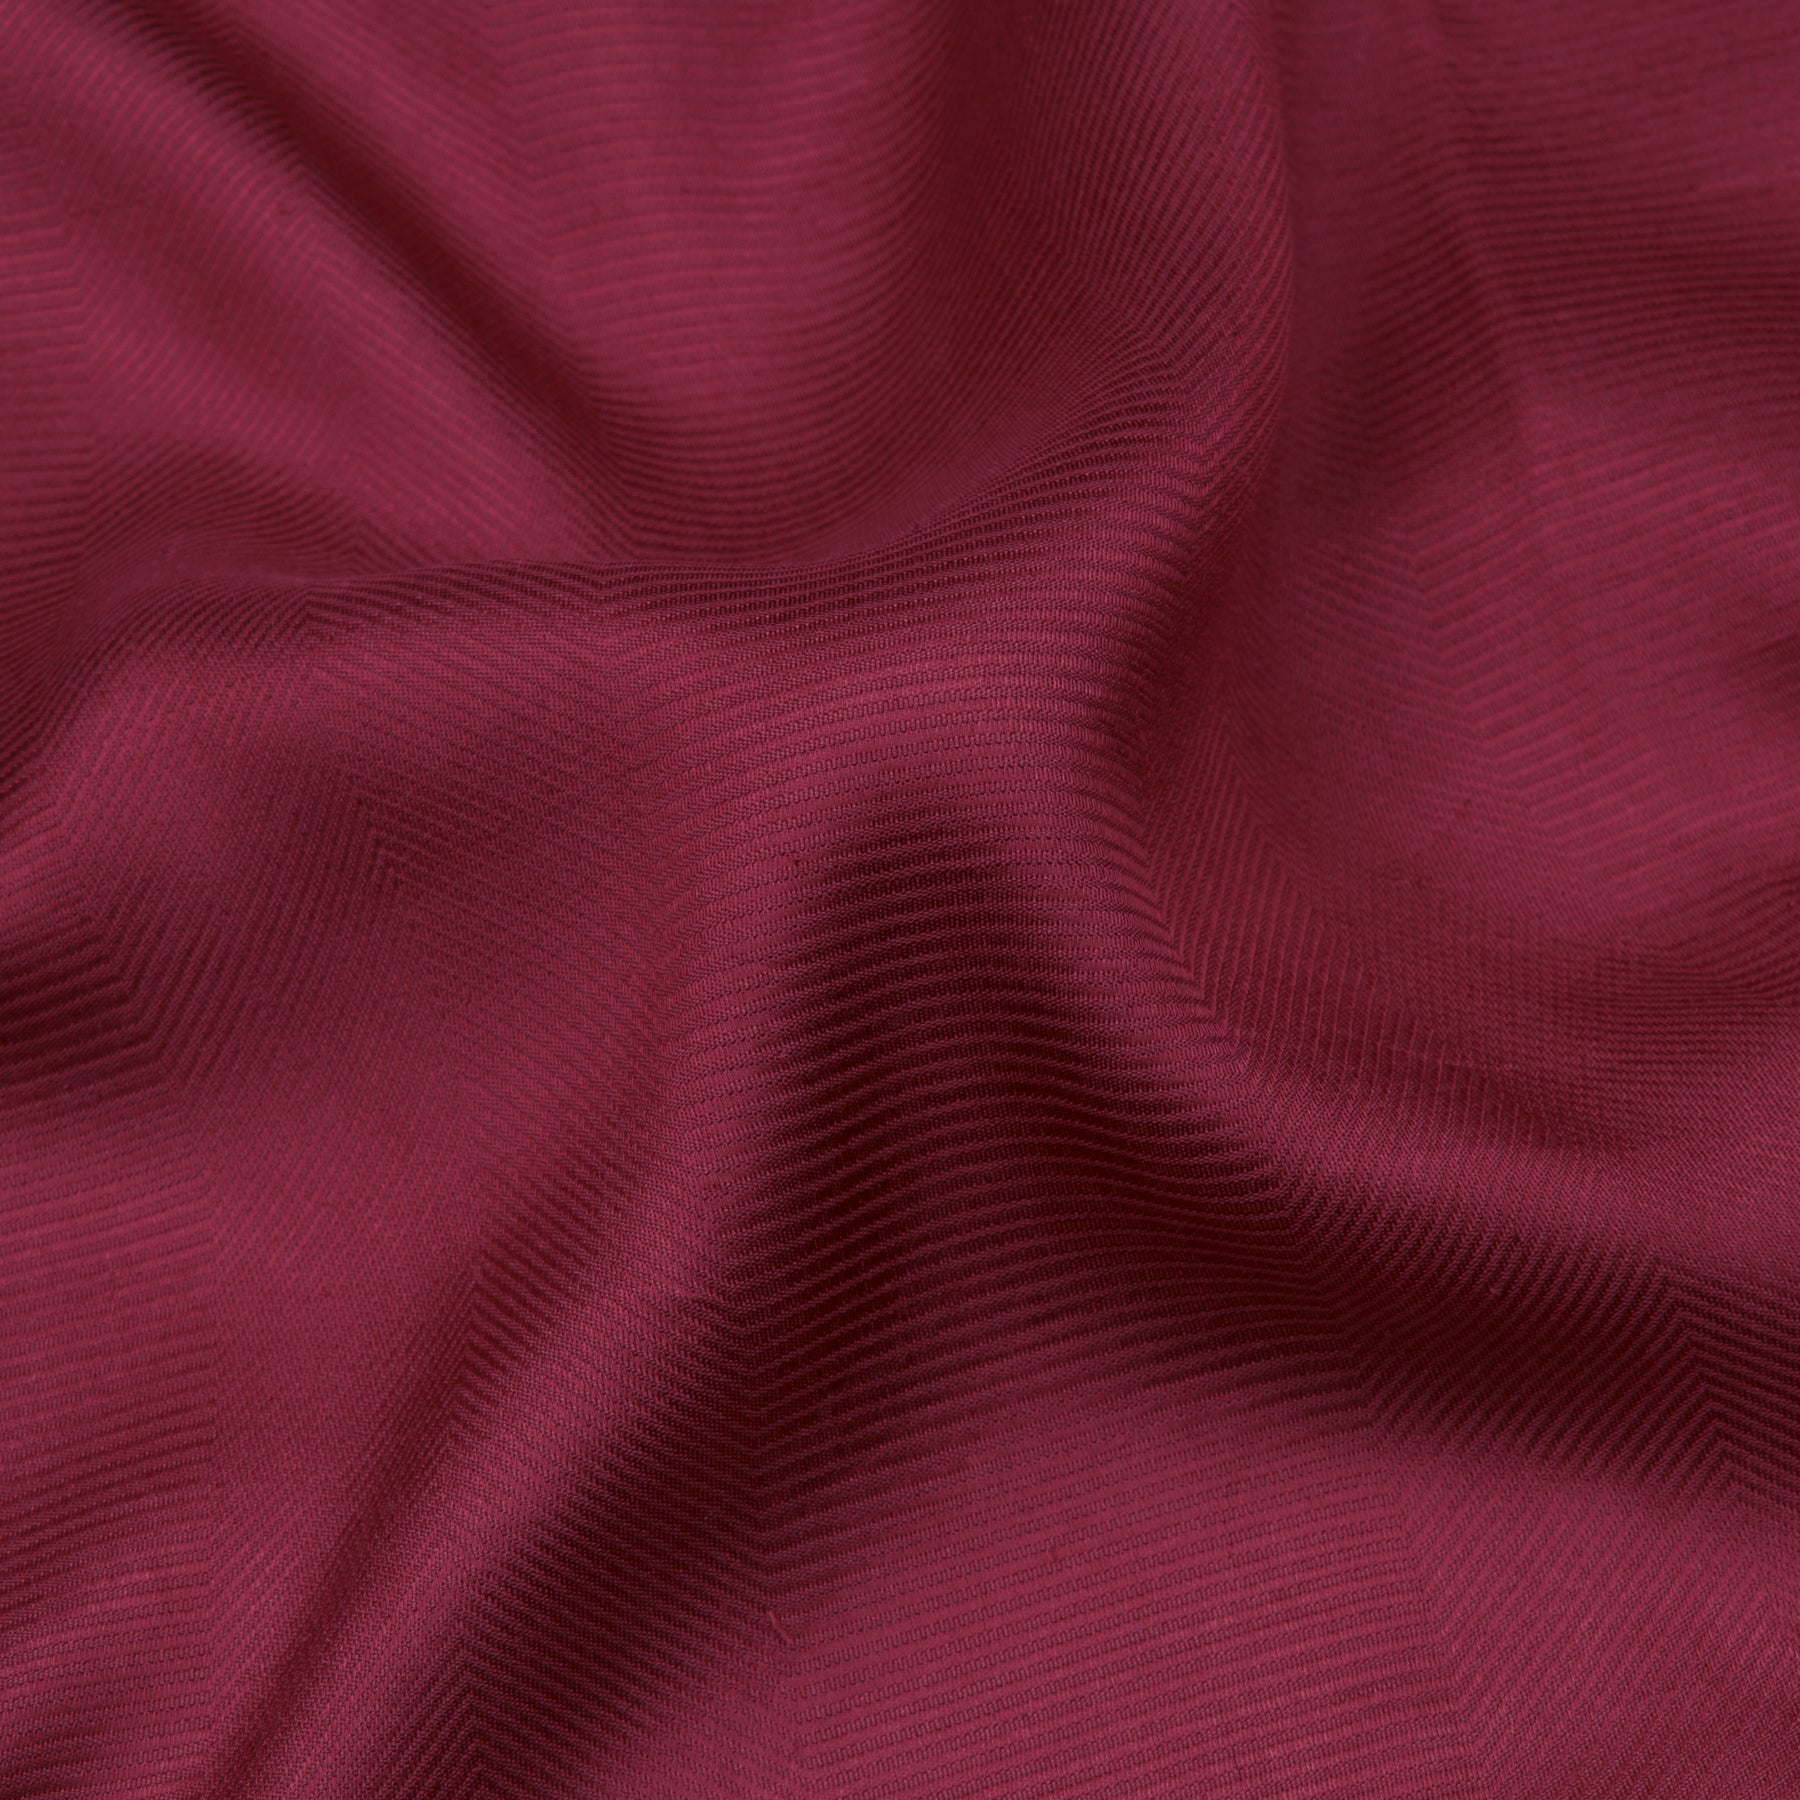 Kanakavalli Kanjivaram Silk Sari 22-599-HS001-12321 - Fabric View